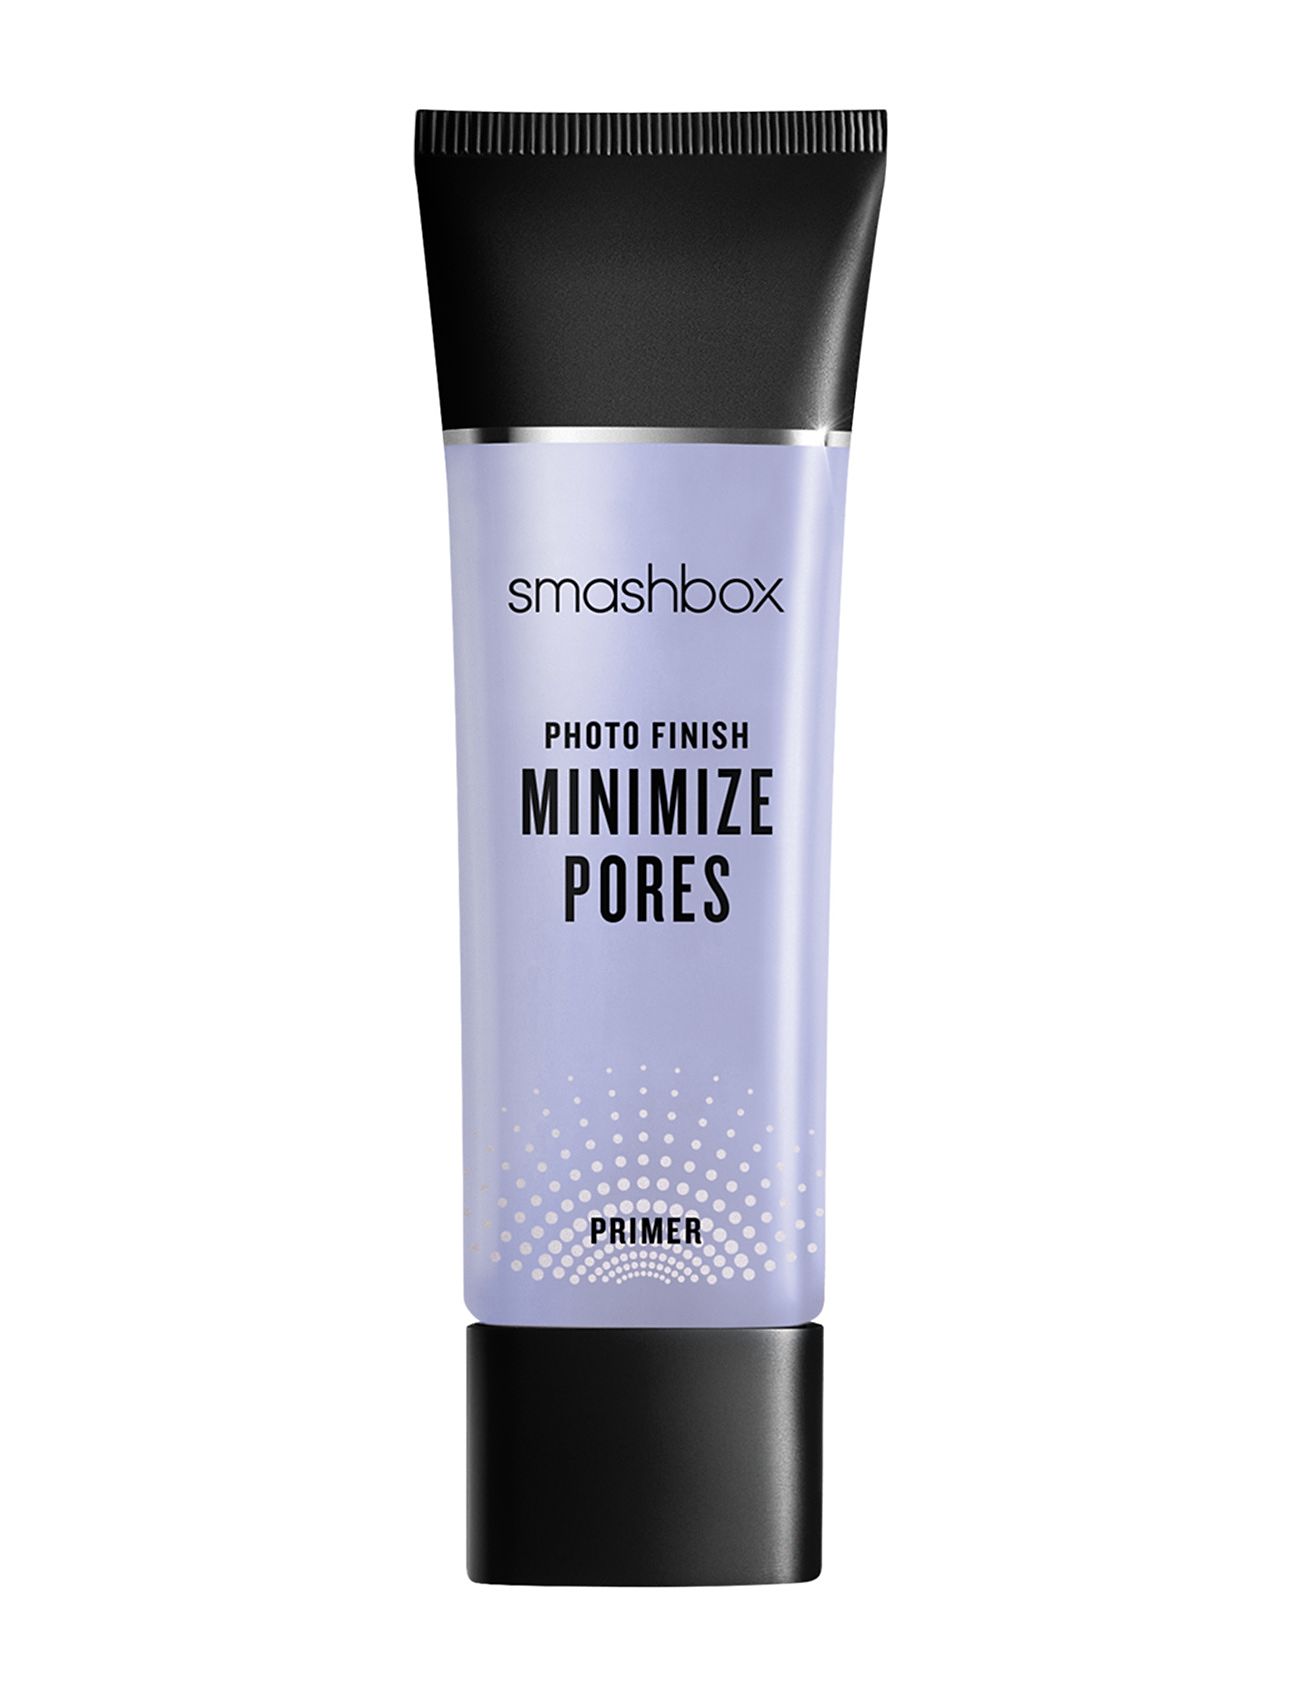 Mini Photo Finish Minimize Pores Primer Makeup Primer Smink Nude Smashbox